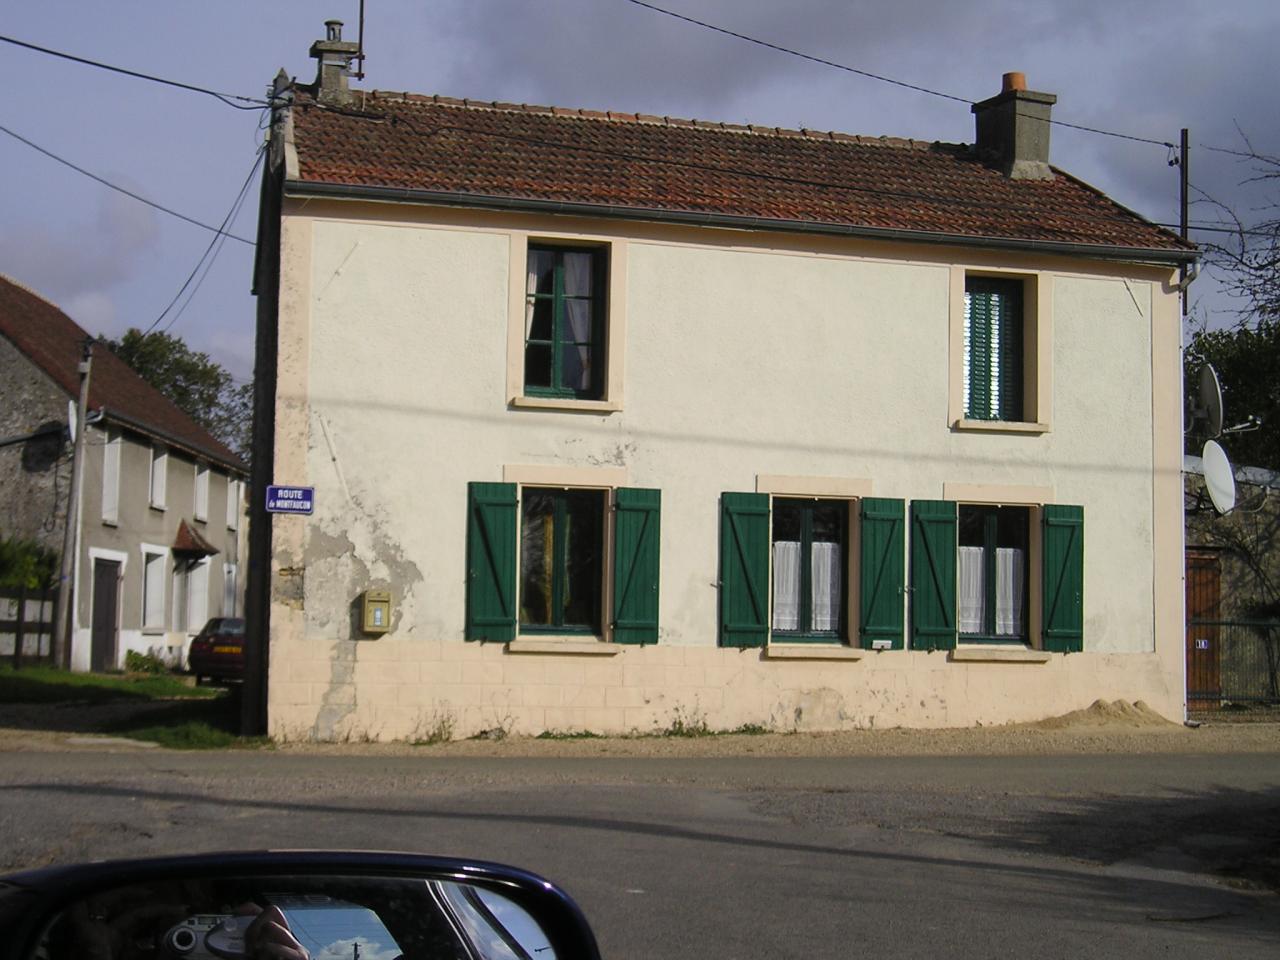 Vieils-Maisons (Aisne) Mont-Cel-Enger la maison Soudan en 2004